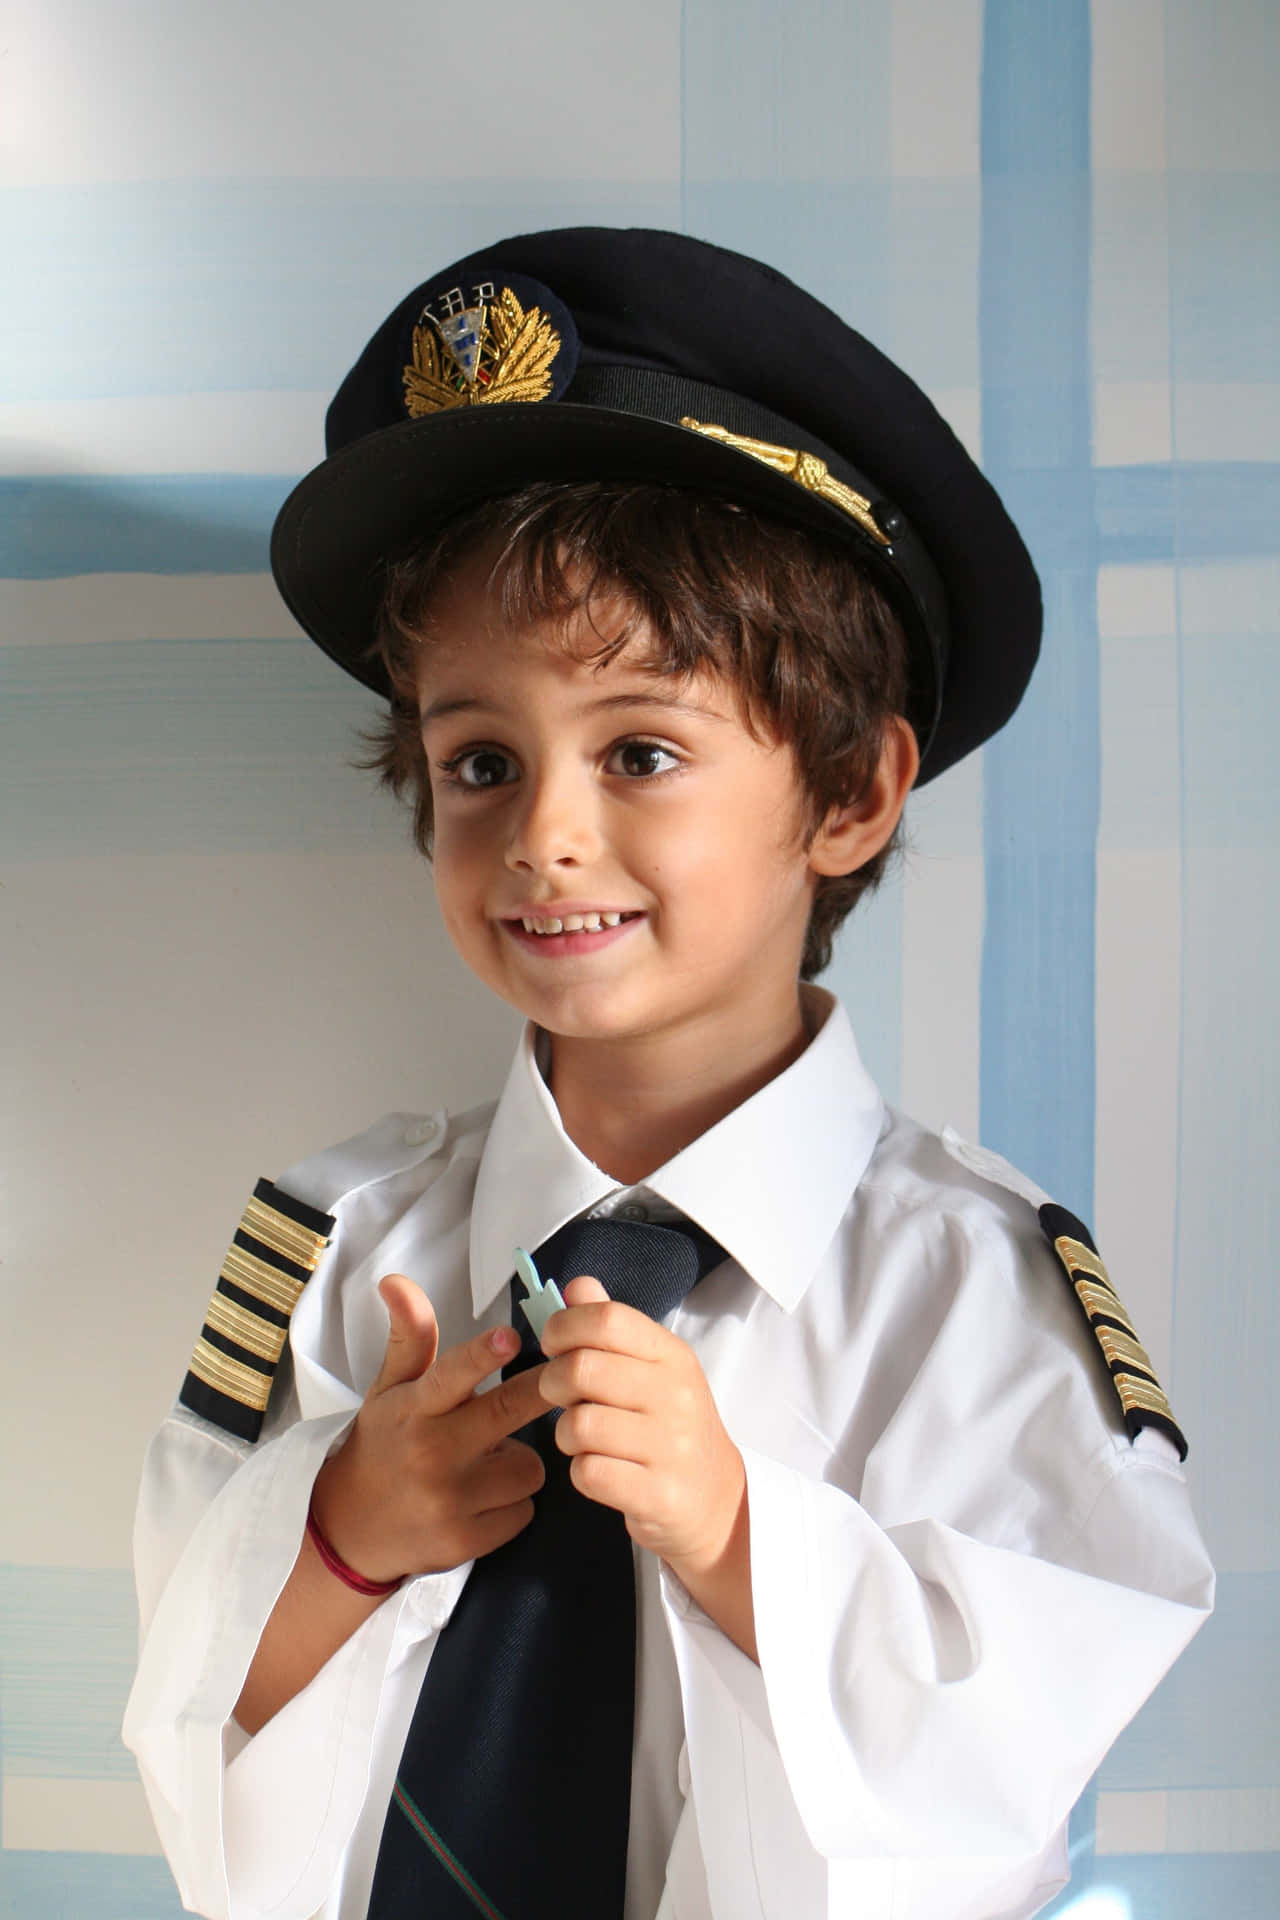 Cute Boy In Pilot Uniform Picture